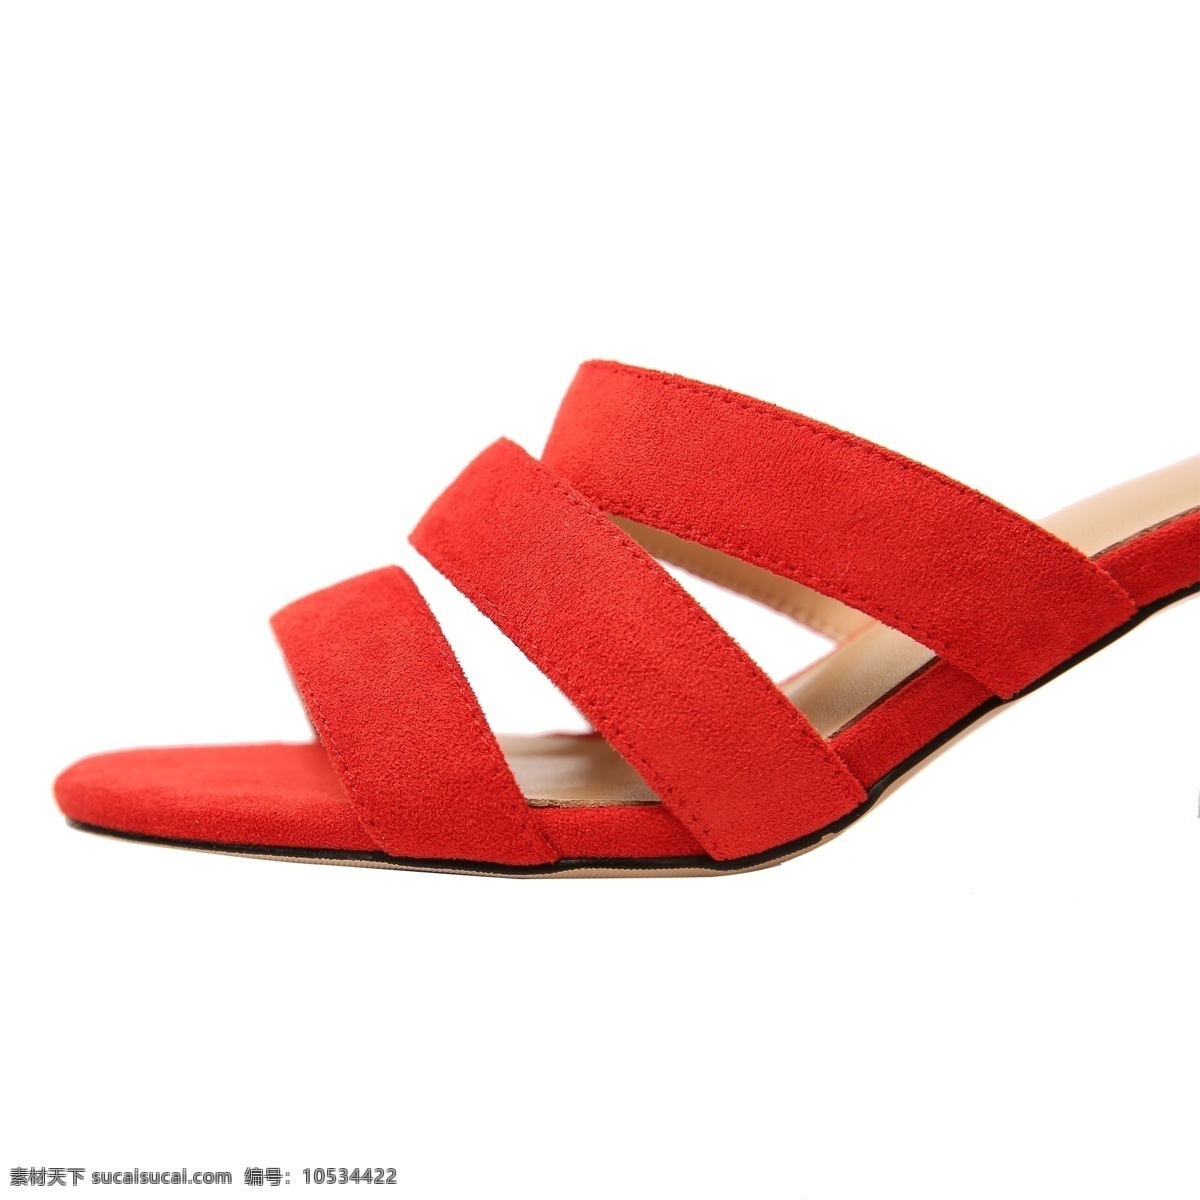 只 红色 女款 鞋子 红色鞋子 一只鞋子 女款鞋子 鞋子摄影 美丽的鞋子 鞋子png 精致鞋子